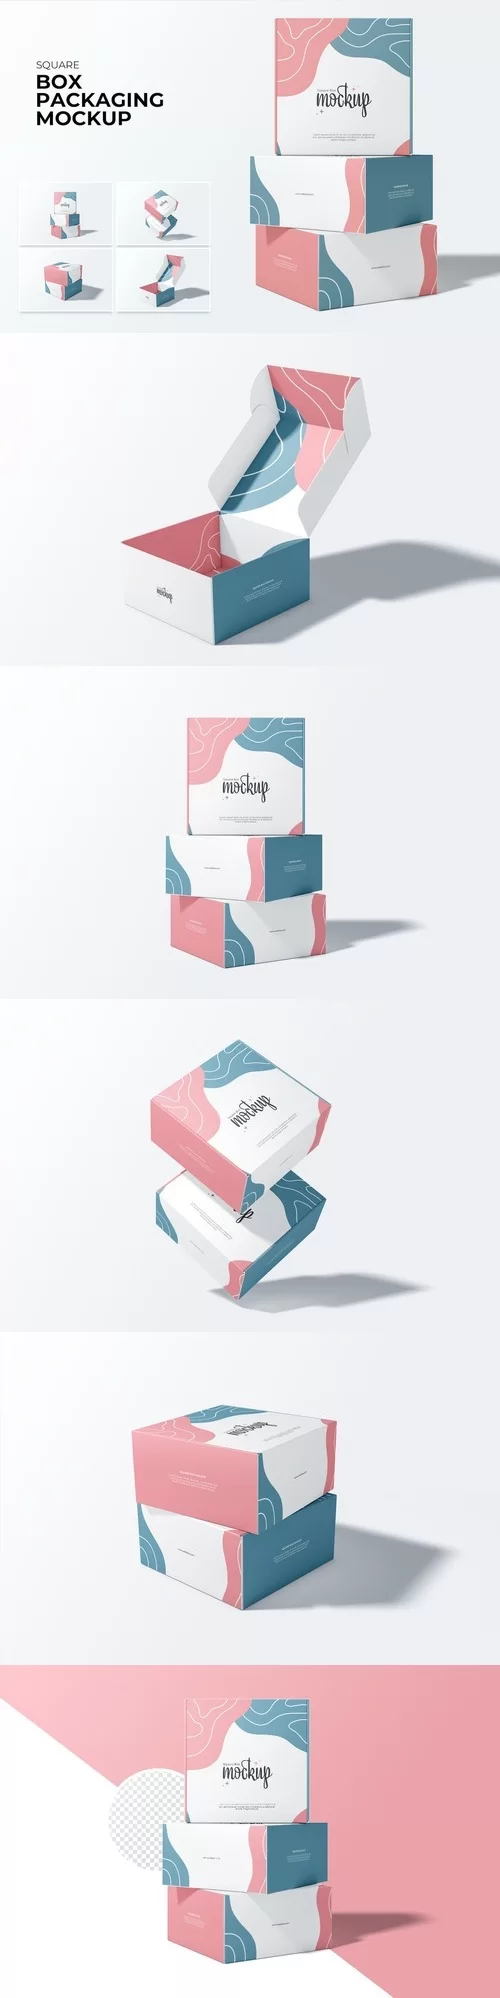 Square Box Packaging Mockup KATD7FJ [PSD]